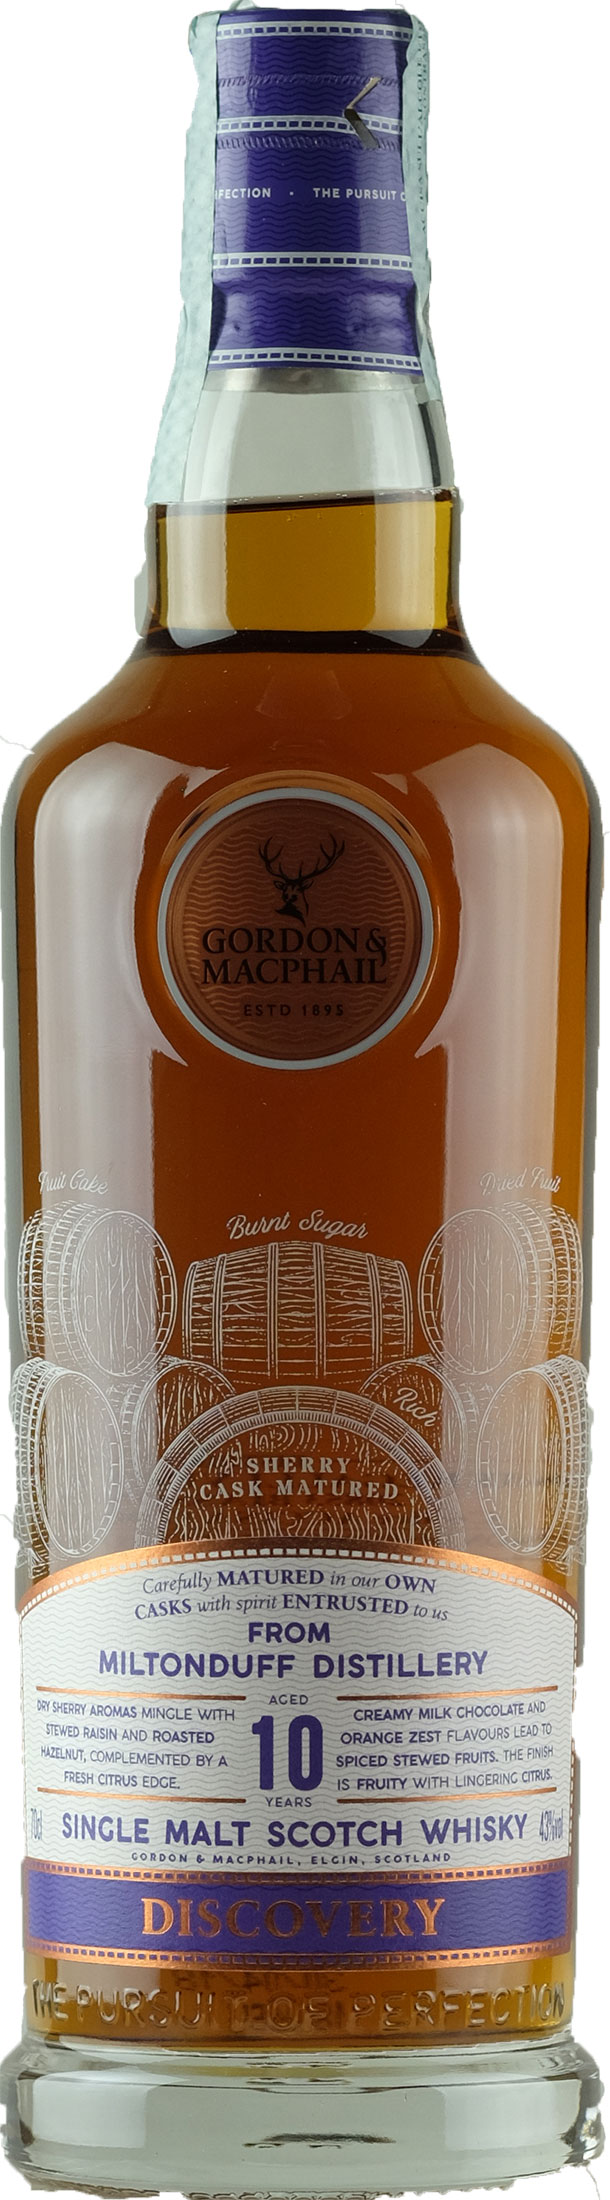 Gordon & Macphail Whisky Miltonduff 10 Anni